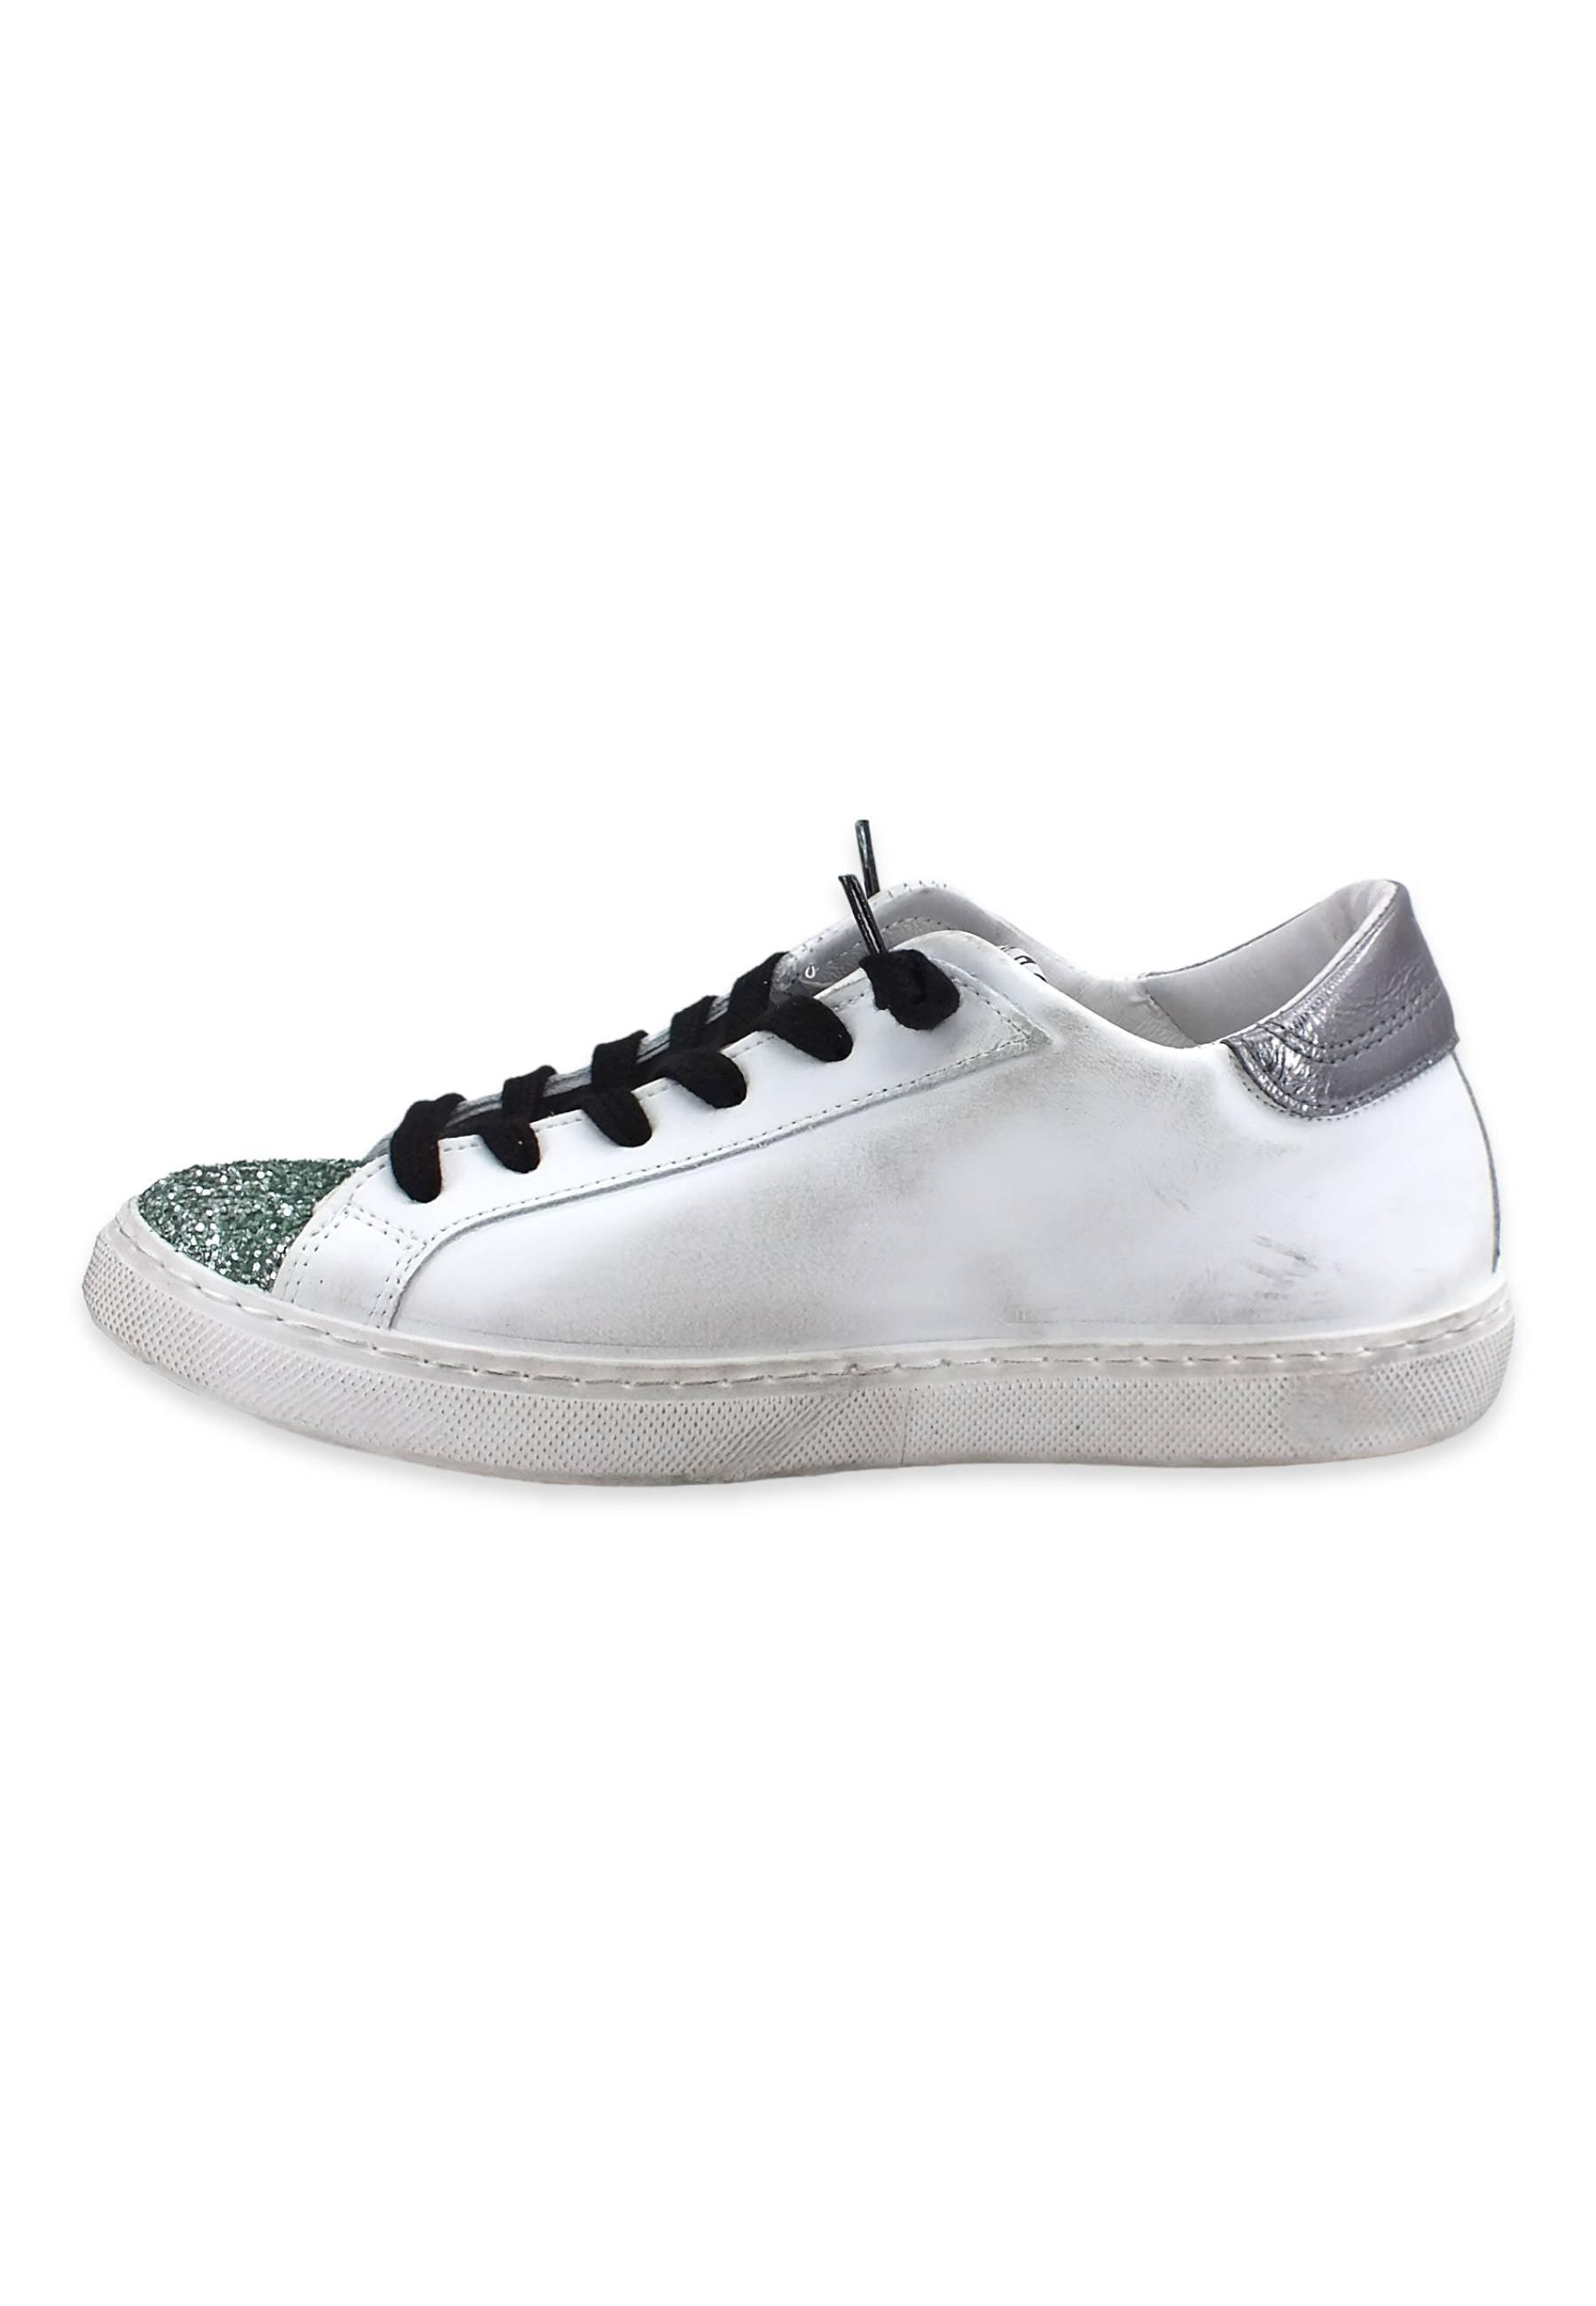 2STAR Sneaker Low Donna Glitter White Green 2SD3620 - Sandrini Calzature e Abbigliamento